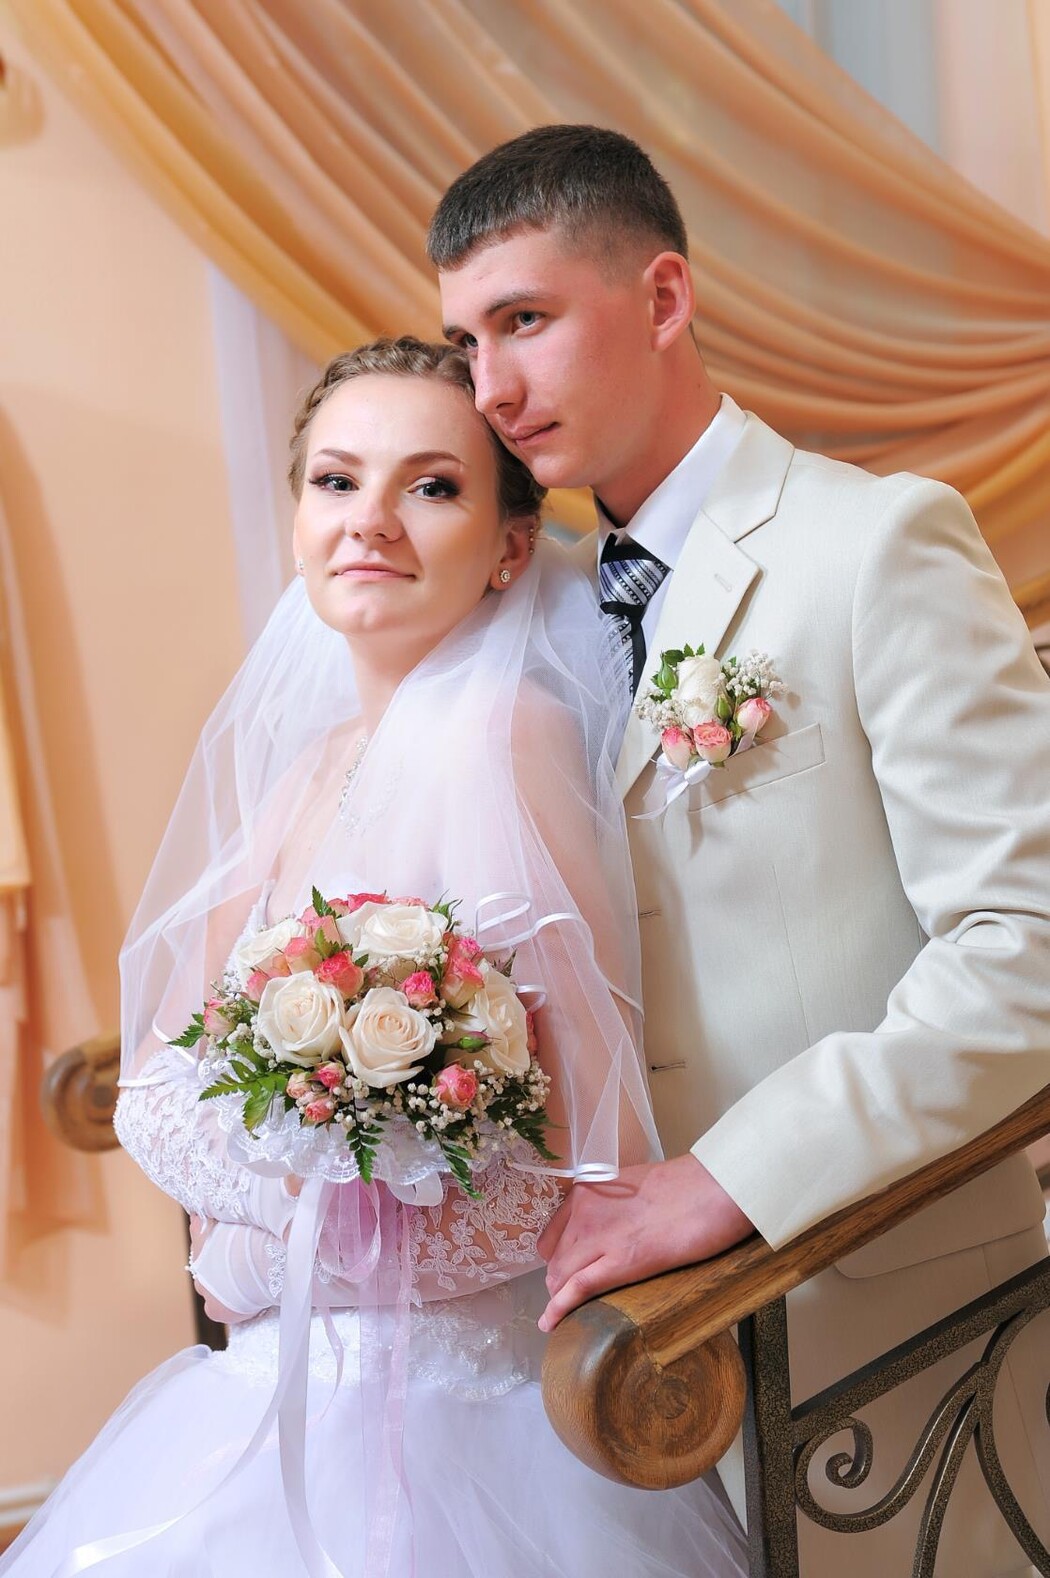 Евгений Бондаренко И Его Муж Фото Свадьба